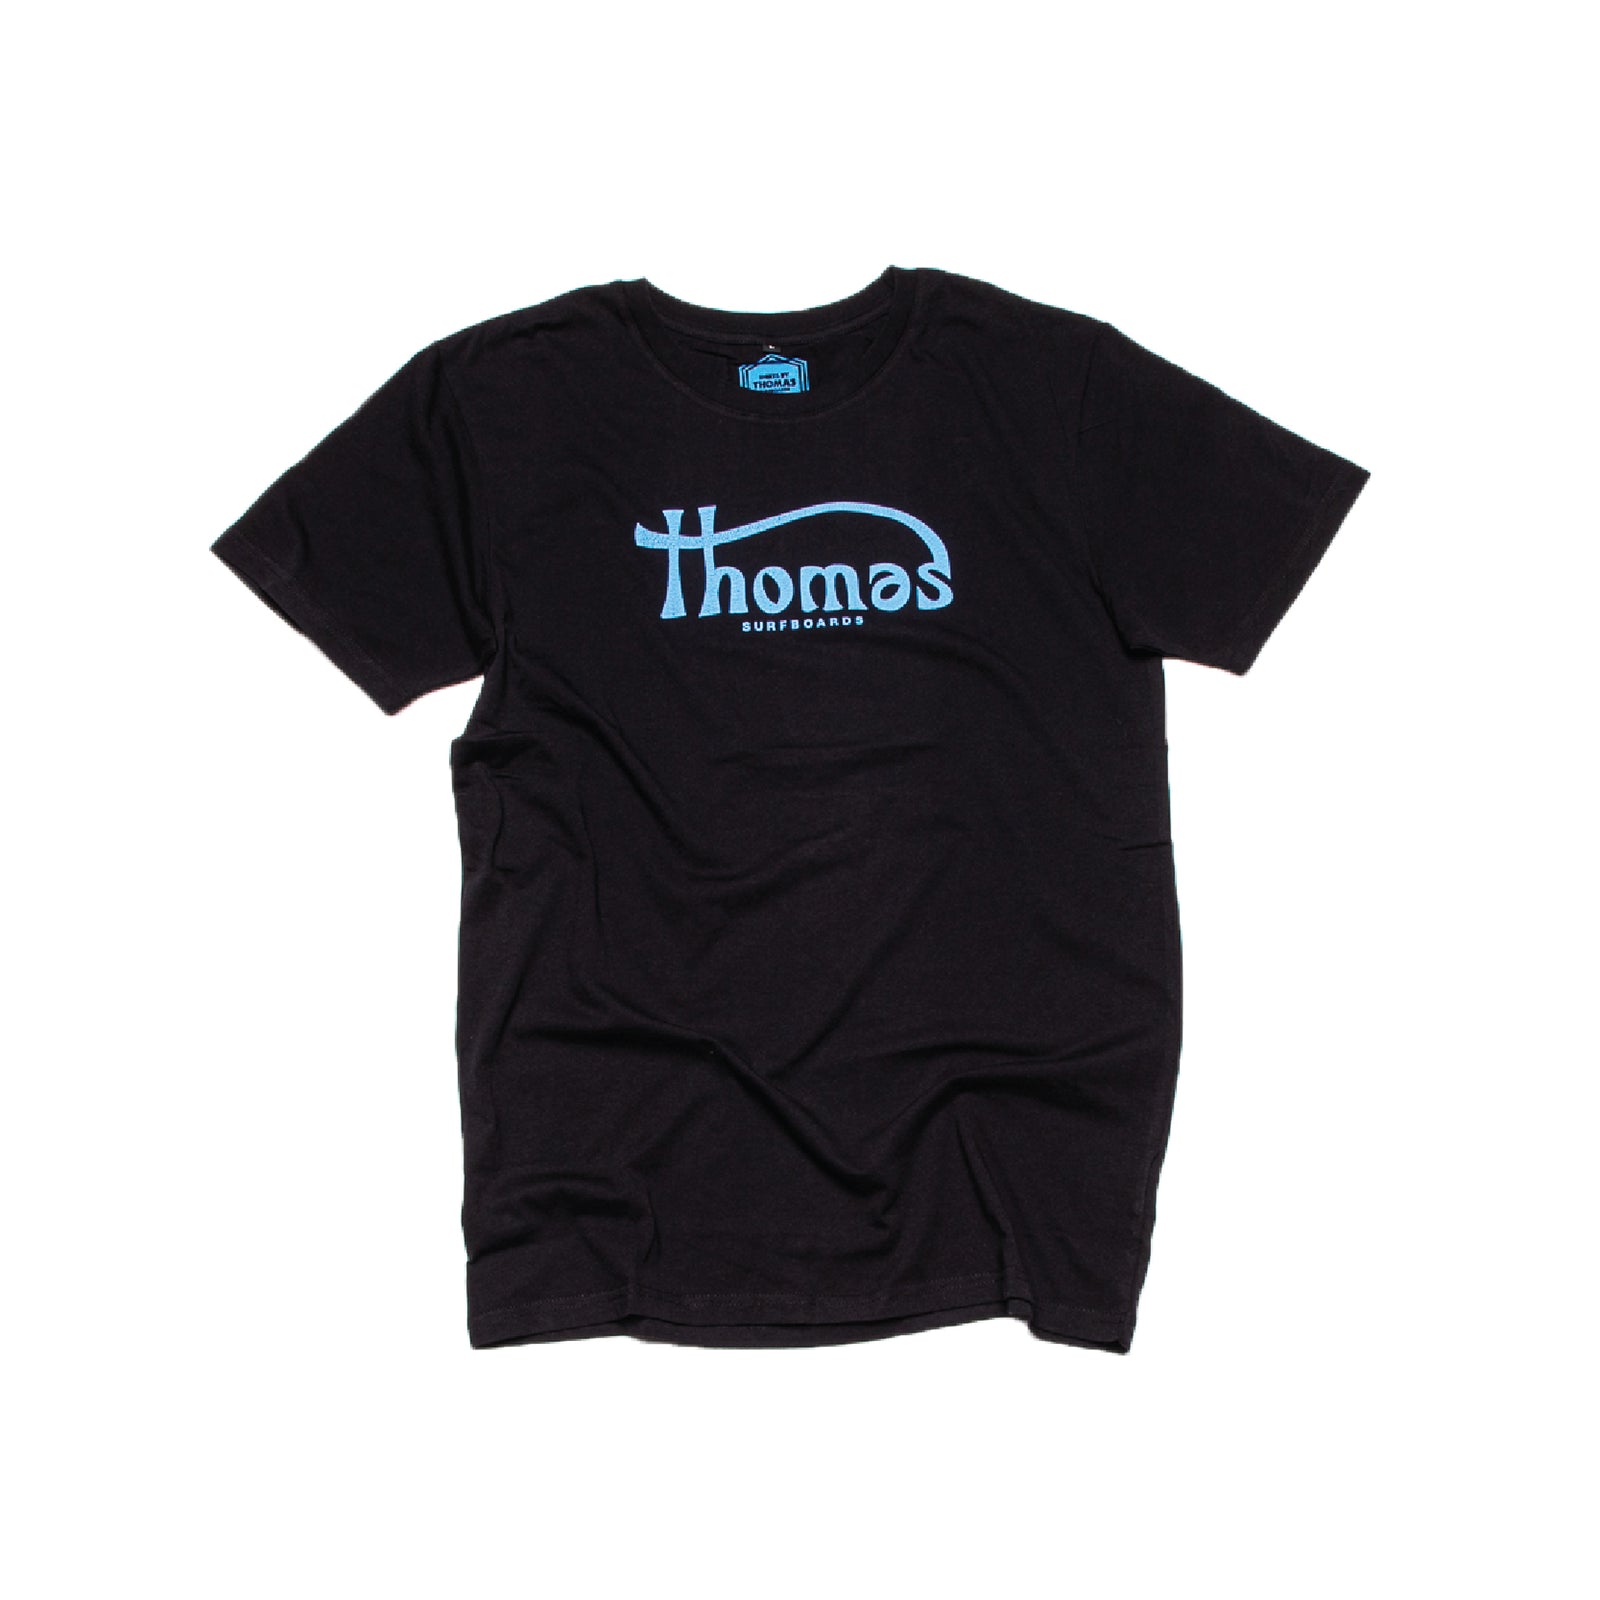 Thomas x McNeil T-Shirt Black